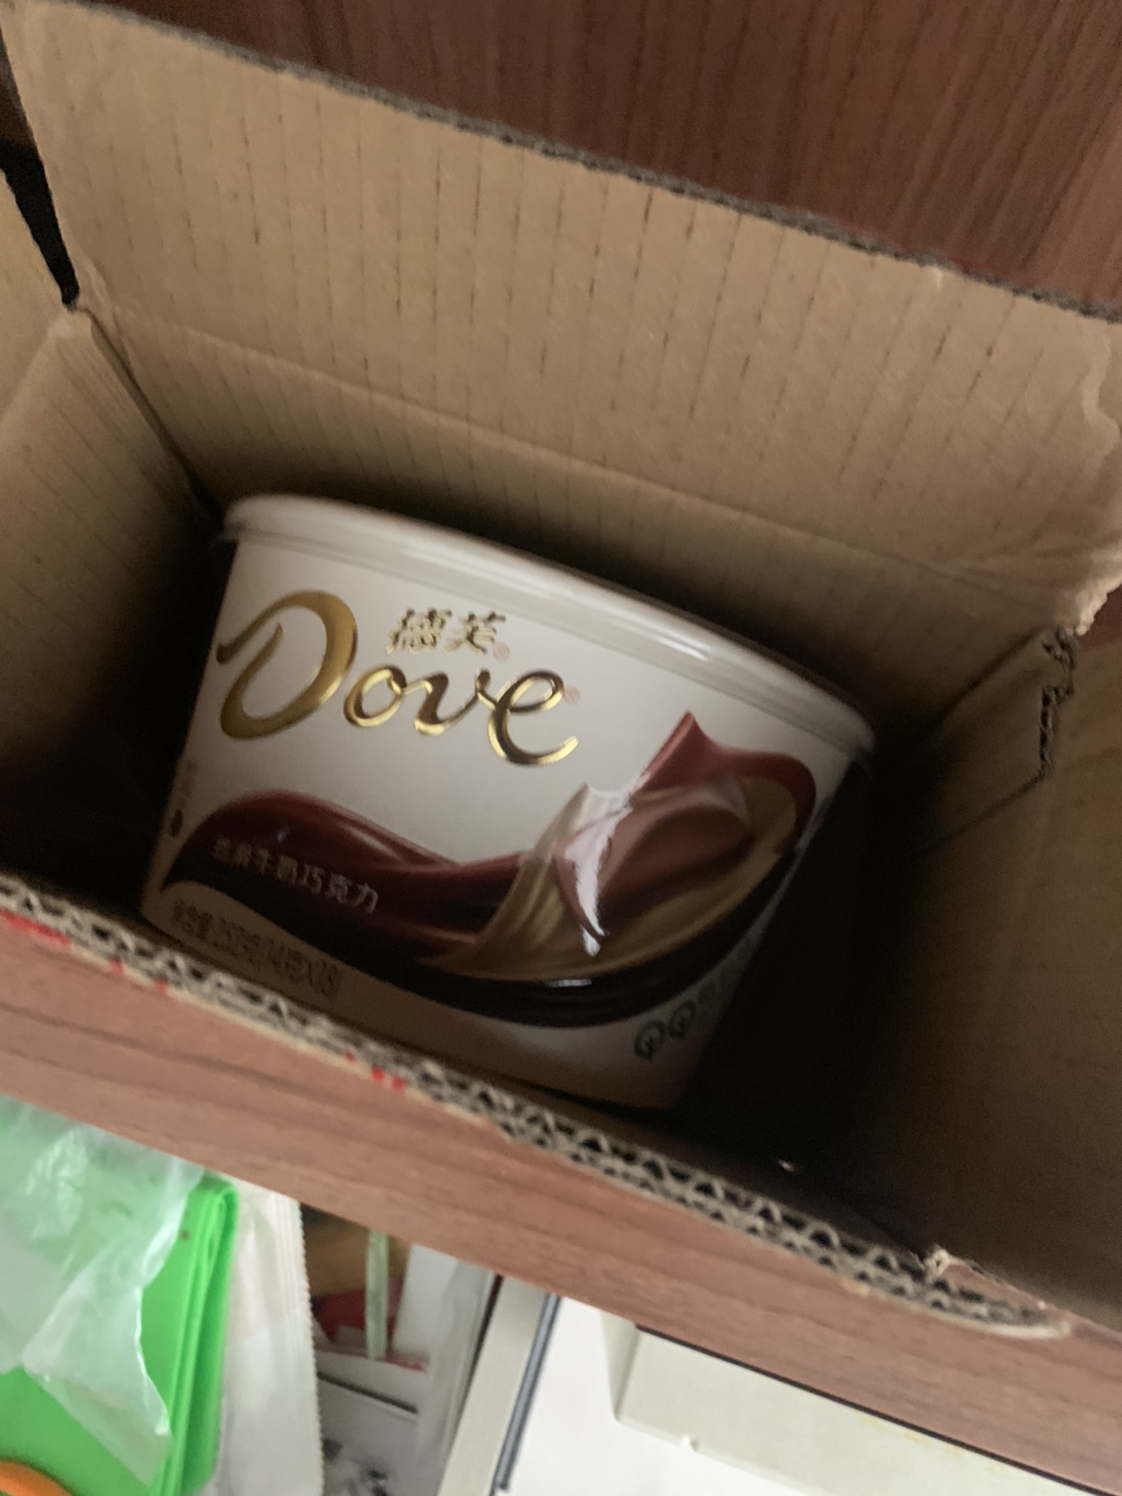 德芙(DOVE)巧克力碗装丝滑牛奶巧克力252g零食情人节礼物晒单图